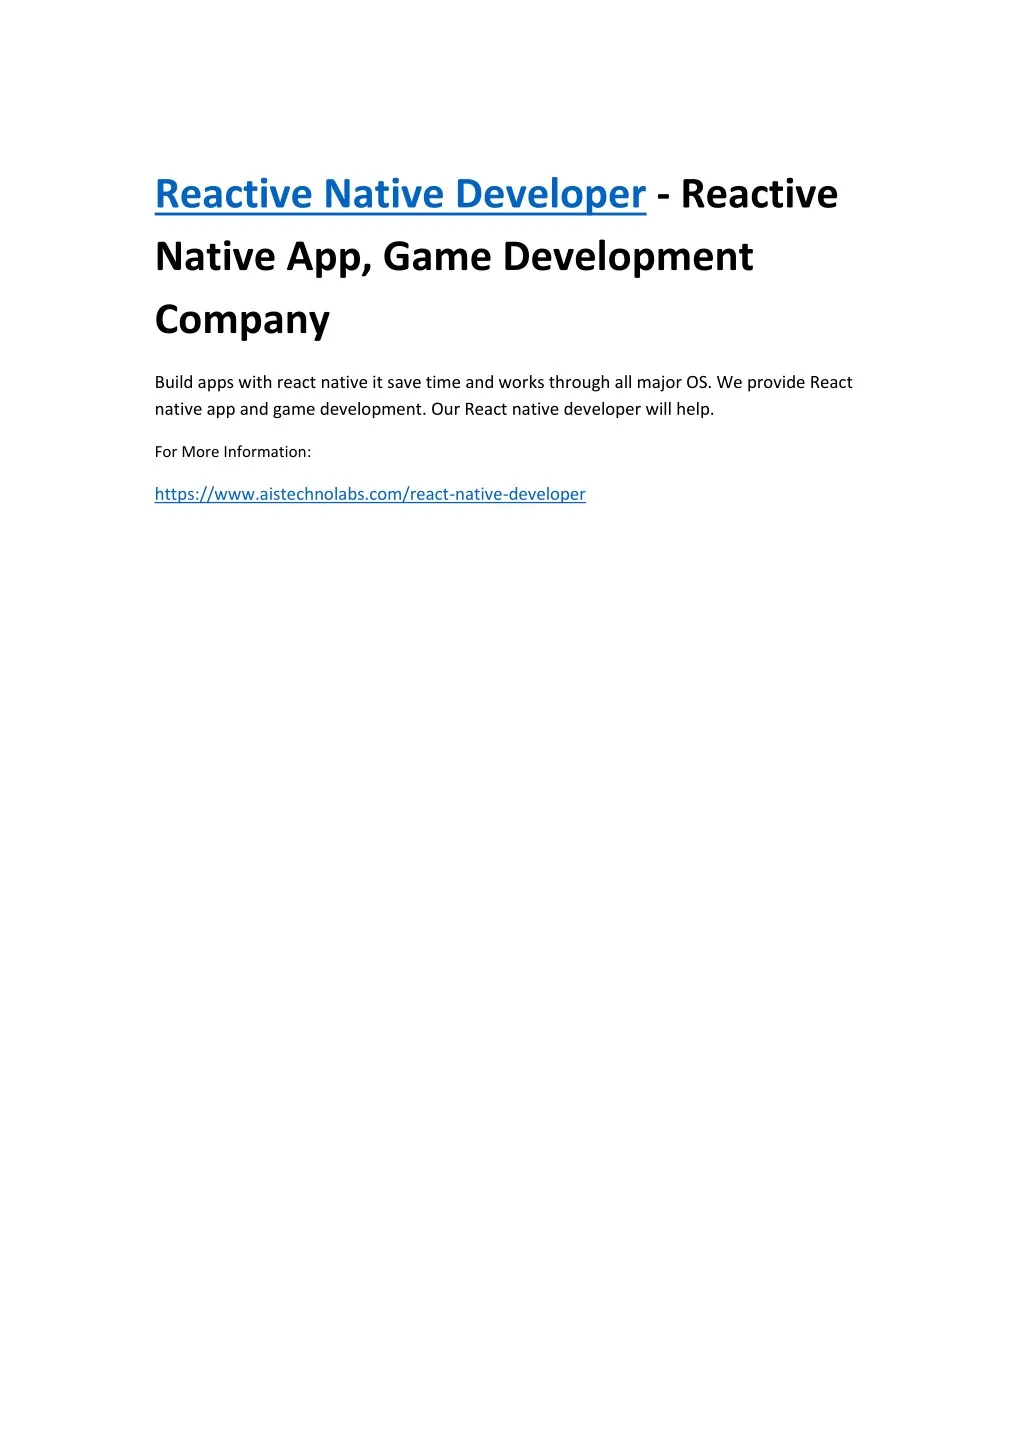 reactive native developer reactive native